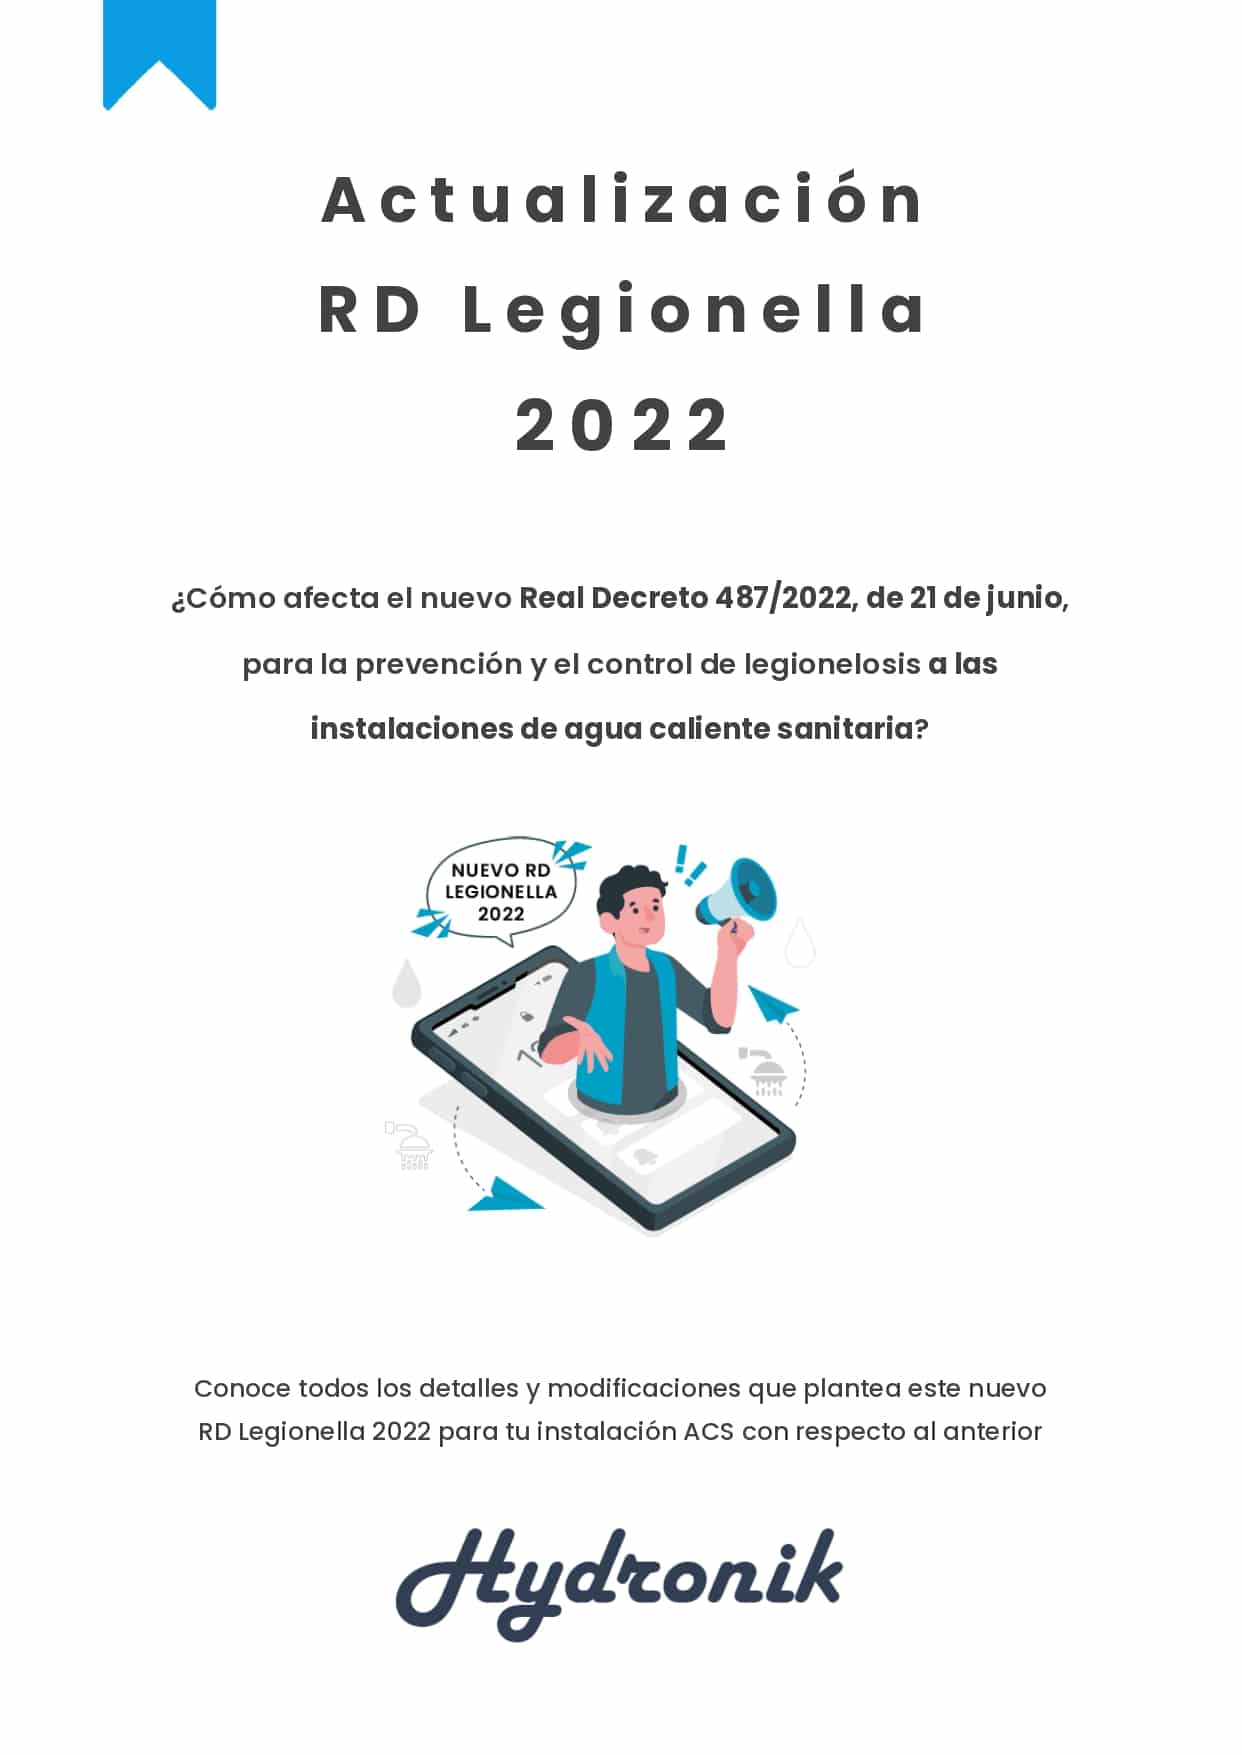 EBOOK ¿Como afecta el Nuevo RD Legionella 2022 al ACS page 0001